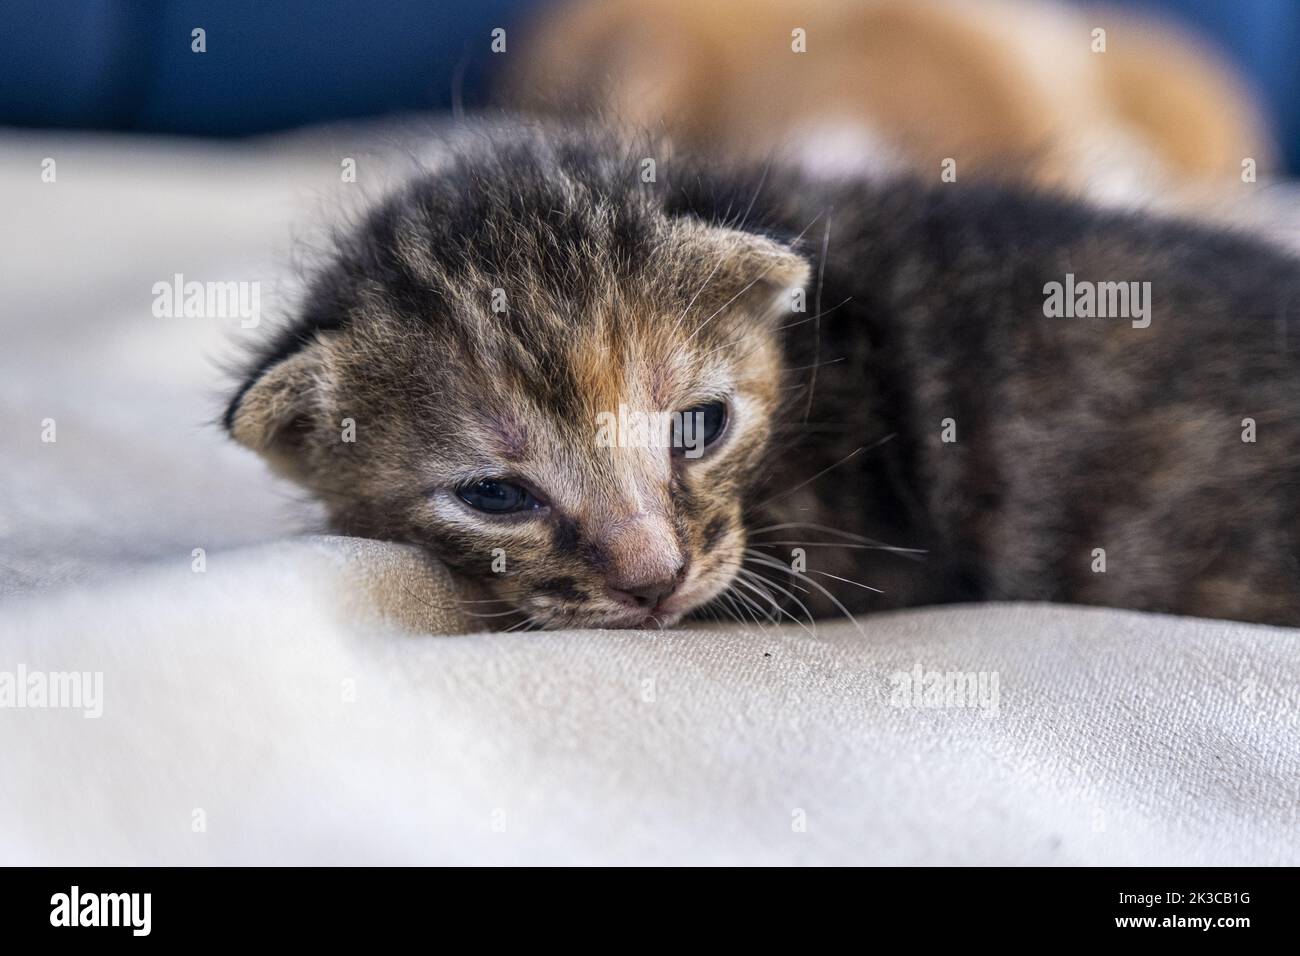 Die Schlafende Neugeborene dunkelgrau gestromte Low-Ear-Katze, Vorderansicht Kätzchen-Konzept, halboffene Augen Neugeborene Katze legt sich hin, niedliches kleines Kätzchen-Konzept Stockfoto